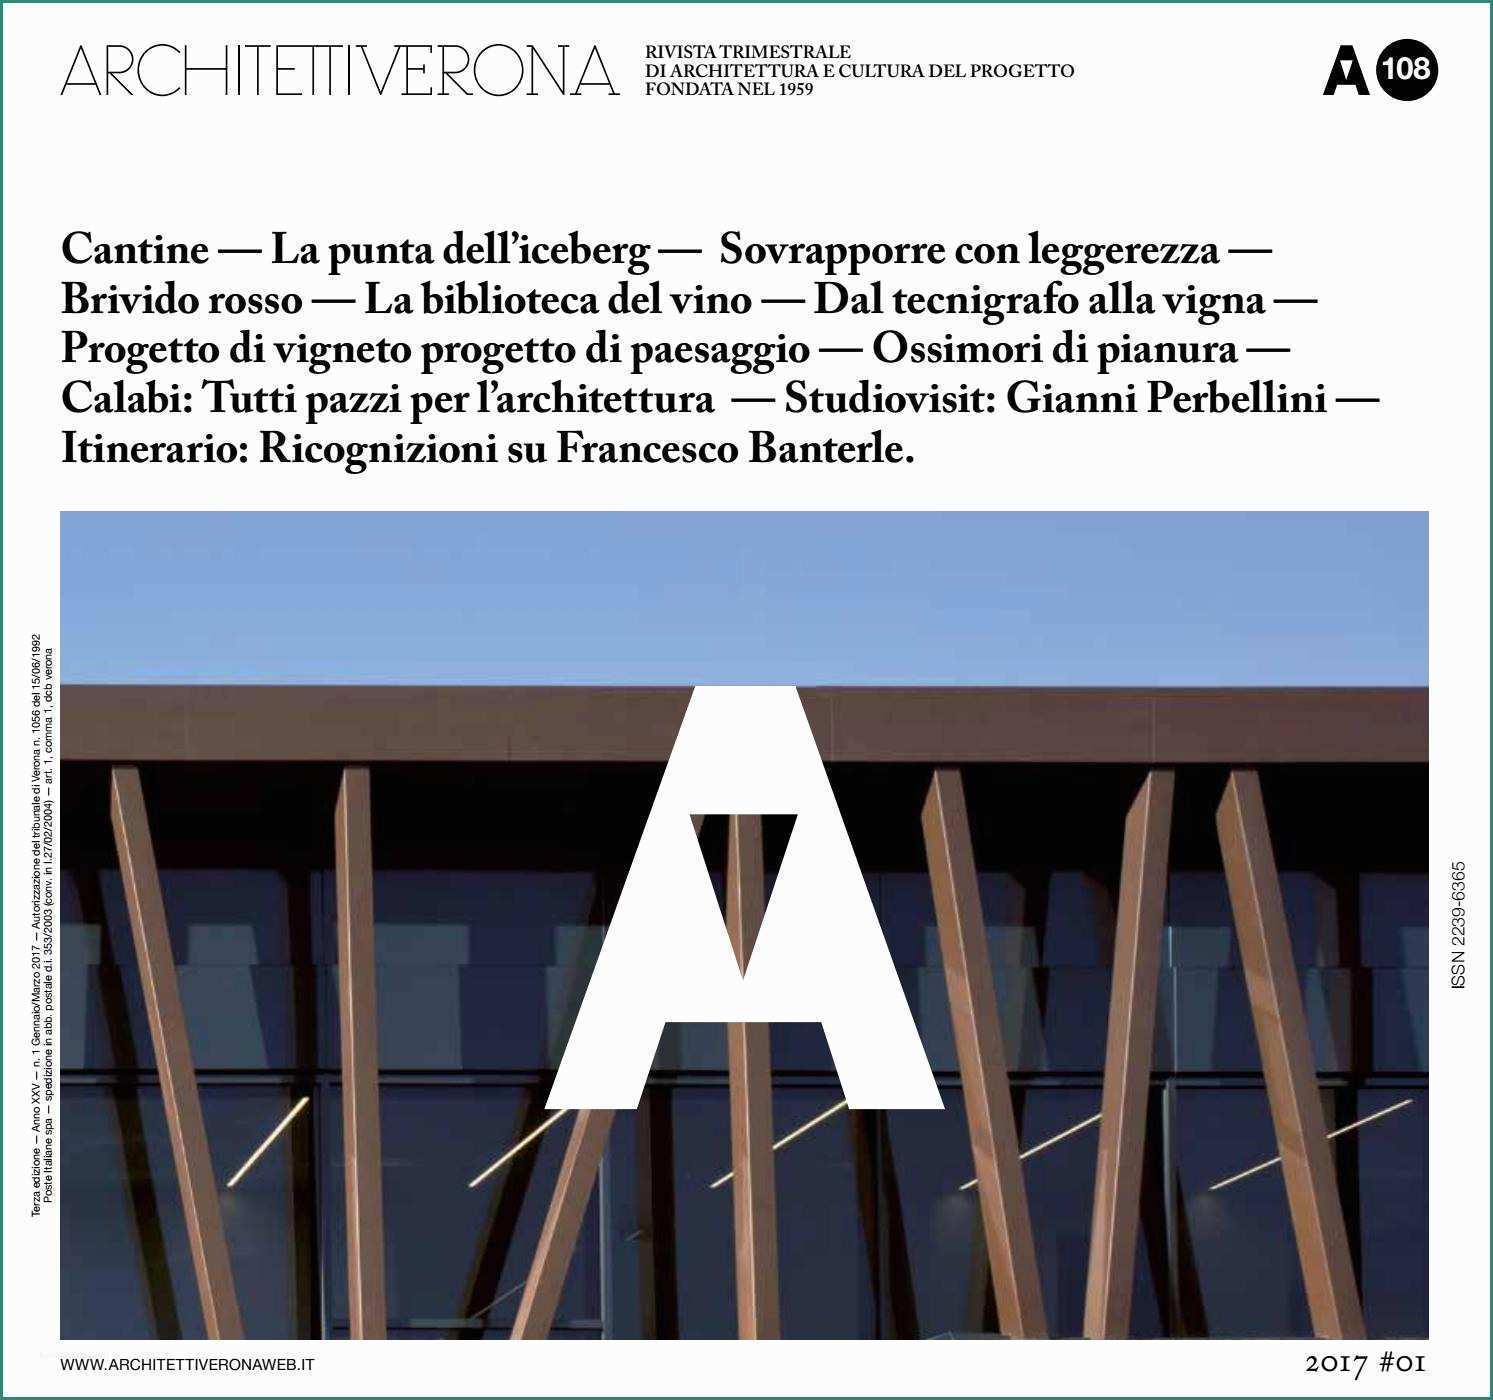 Prefabbricati Senza Concessione Edilizia E Architettiverona 108 by Architettiverona issuu